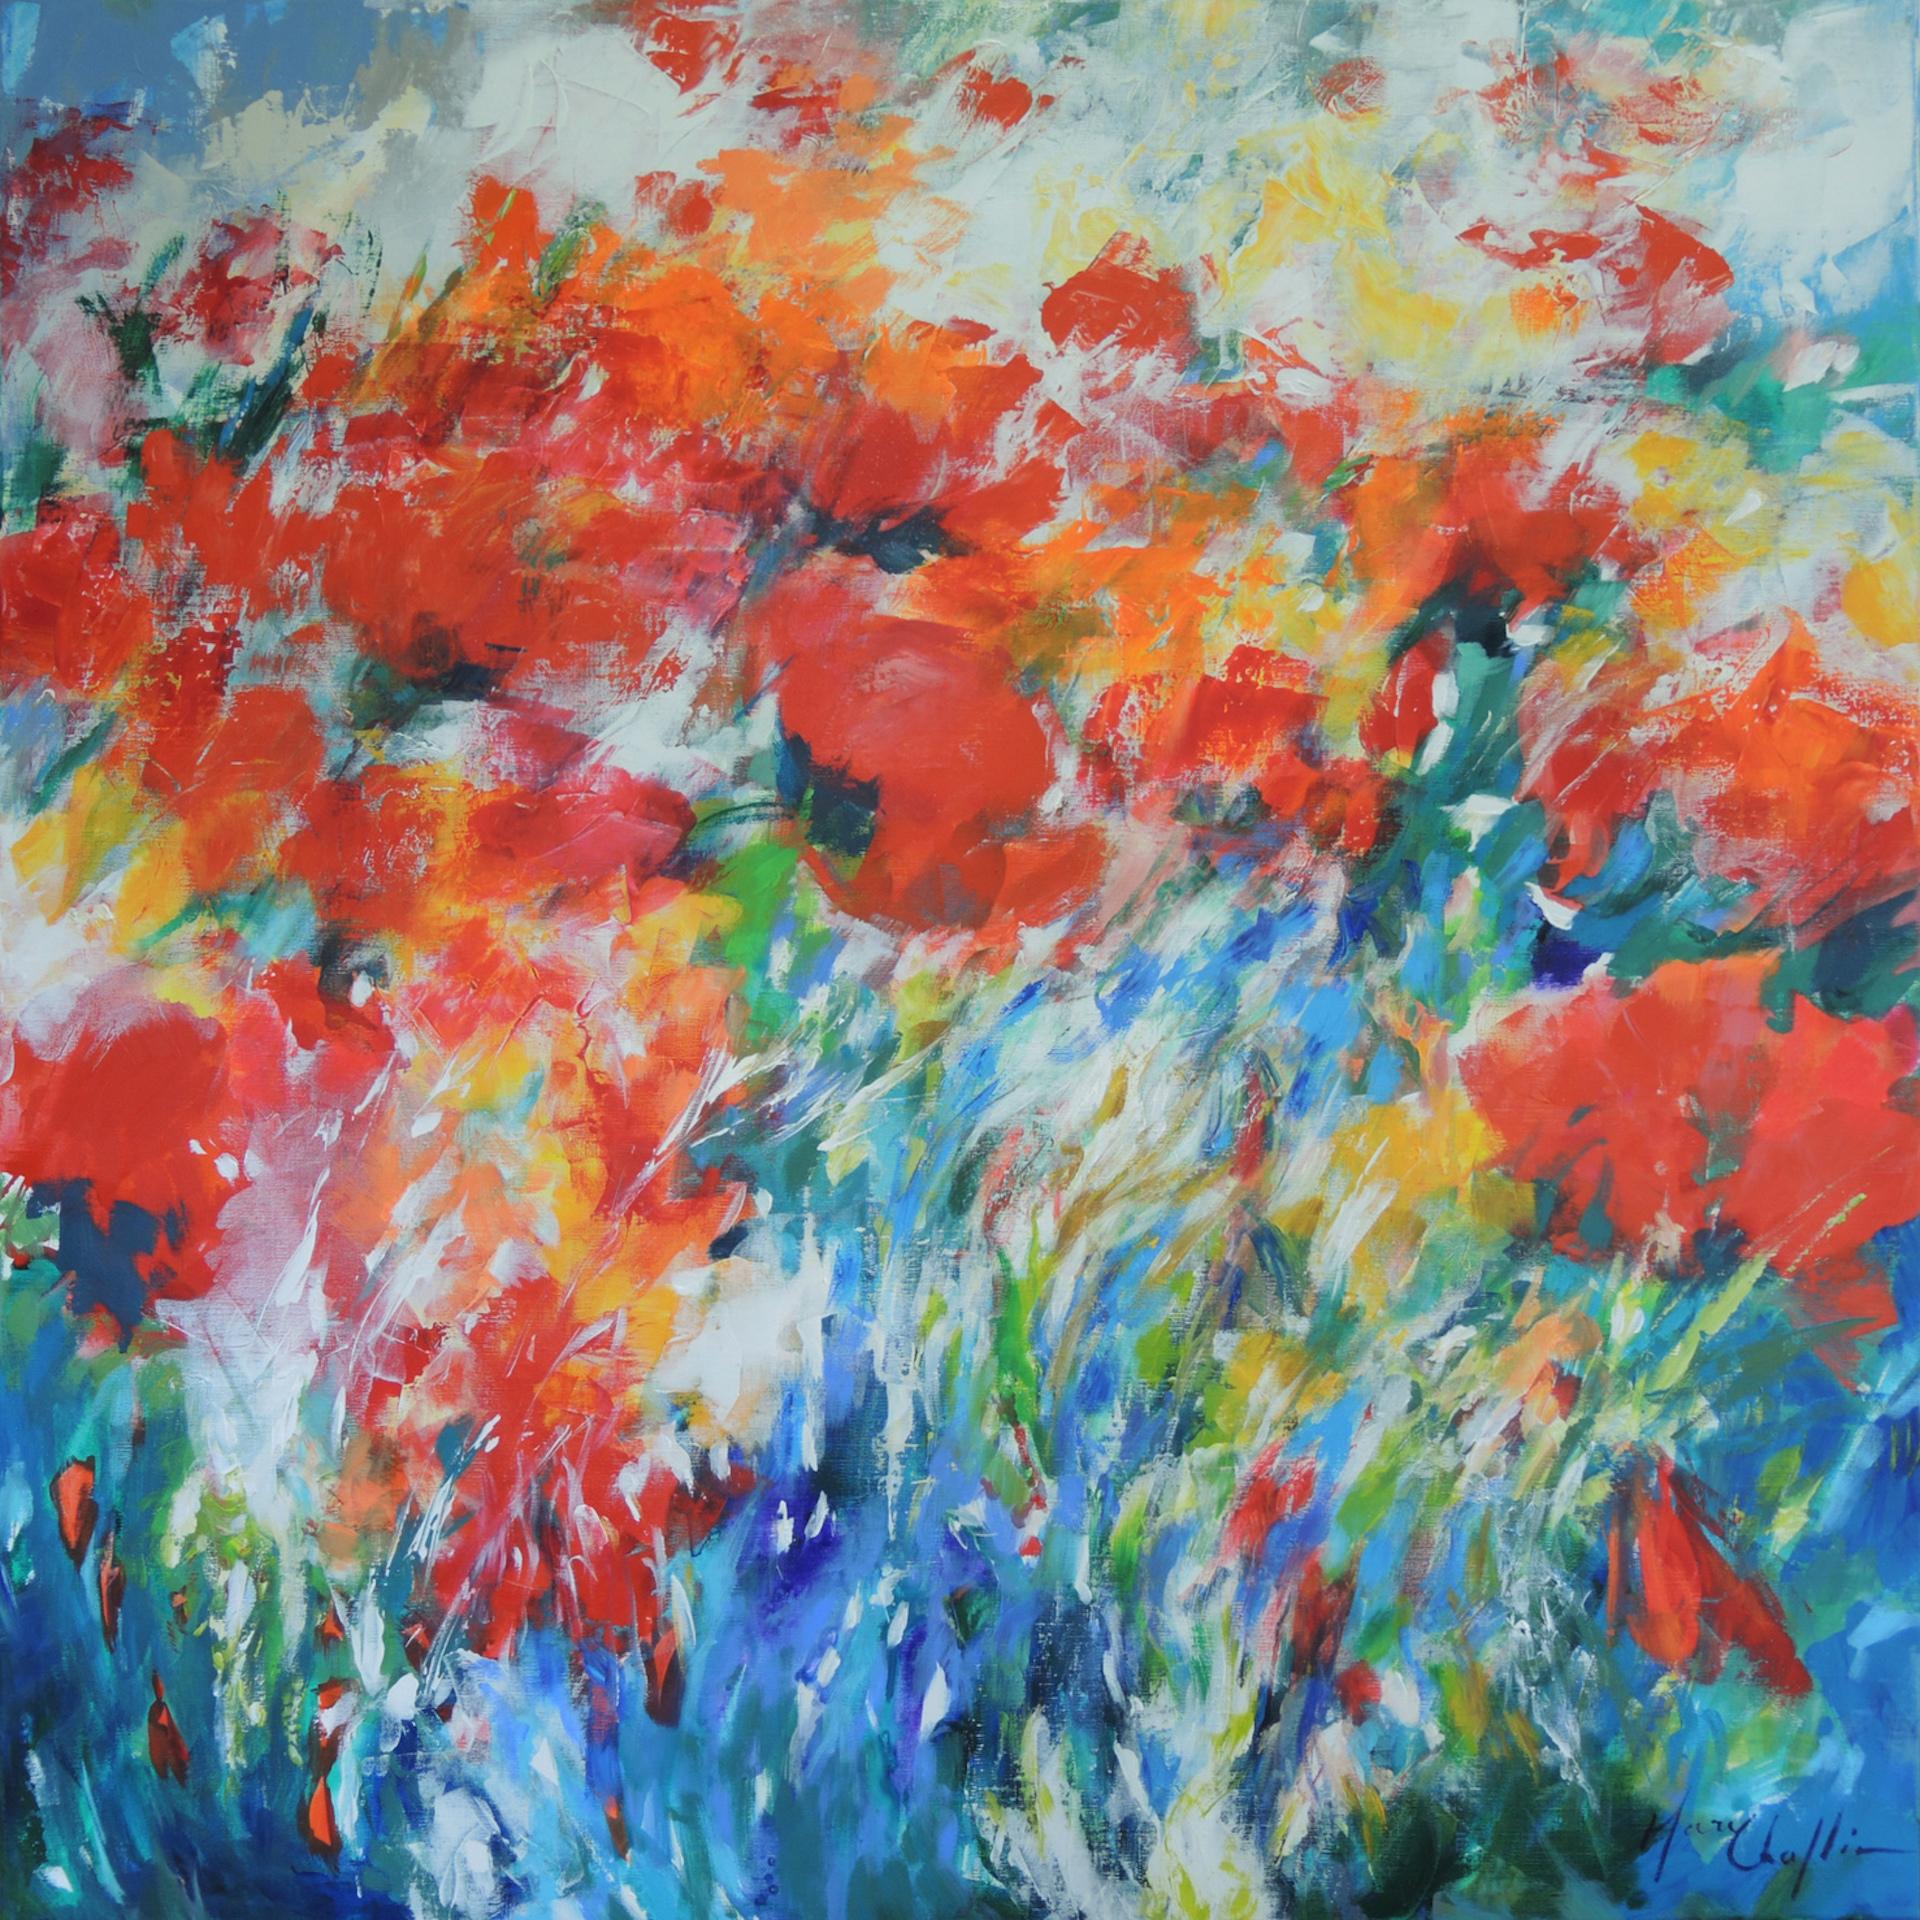 Orientalische Mohnblumen im Sommerwind, großes halb-abstraktes Gemälde. Mary Chaplin ist eine professionelle Künstlerin, die sich viel von ihrem Garten inspirieren lässt. Mohnblumen, wild oder selbst angebaut, sind ein Thema, das sie liebt. Zwischen